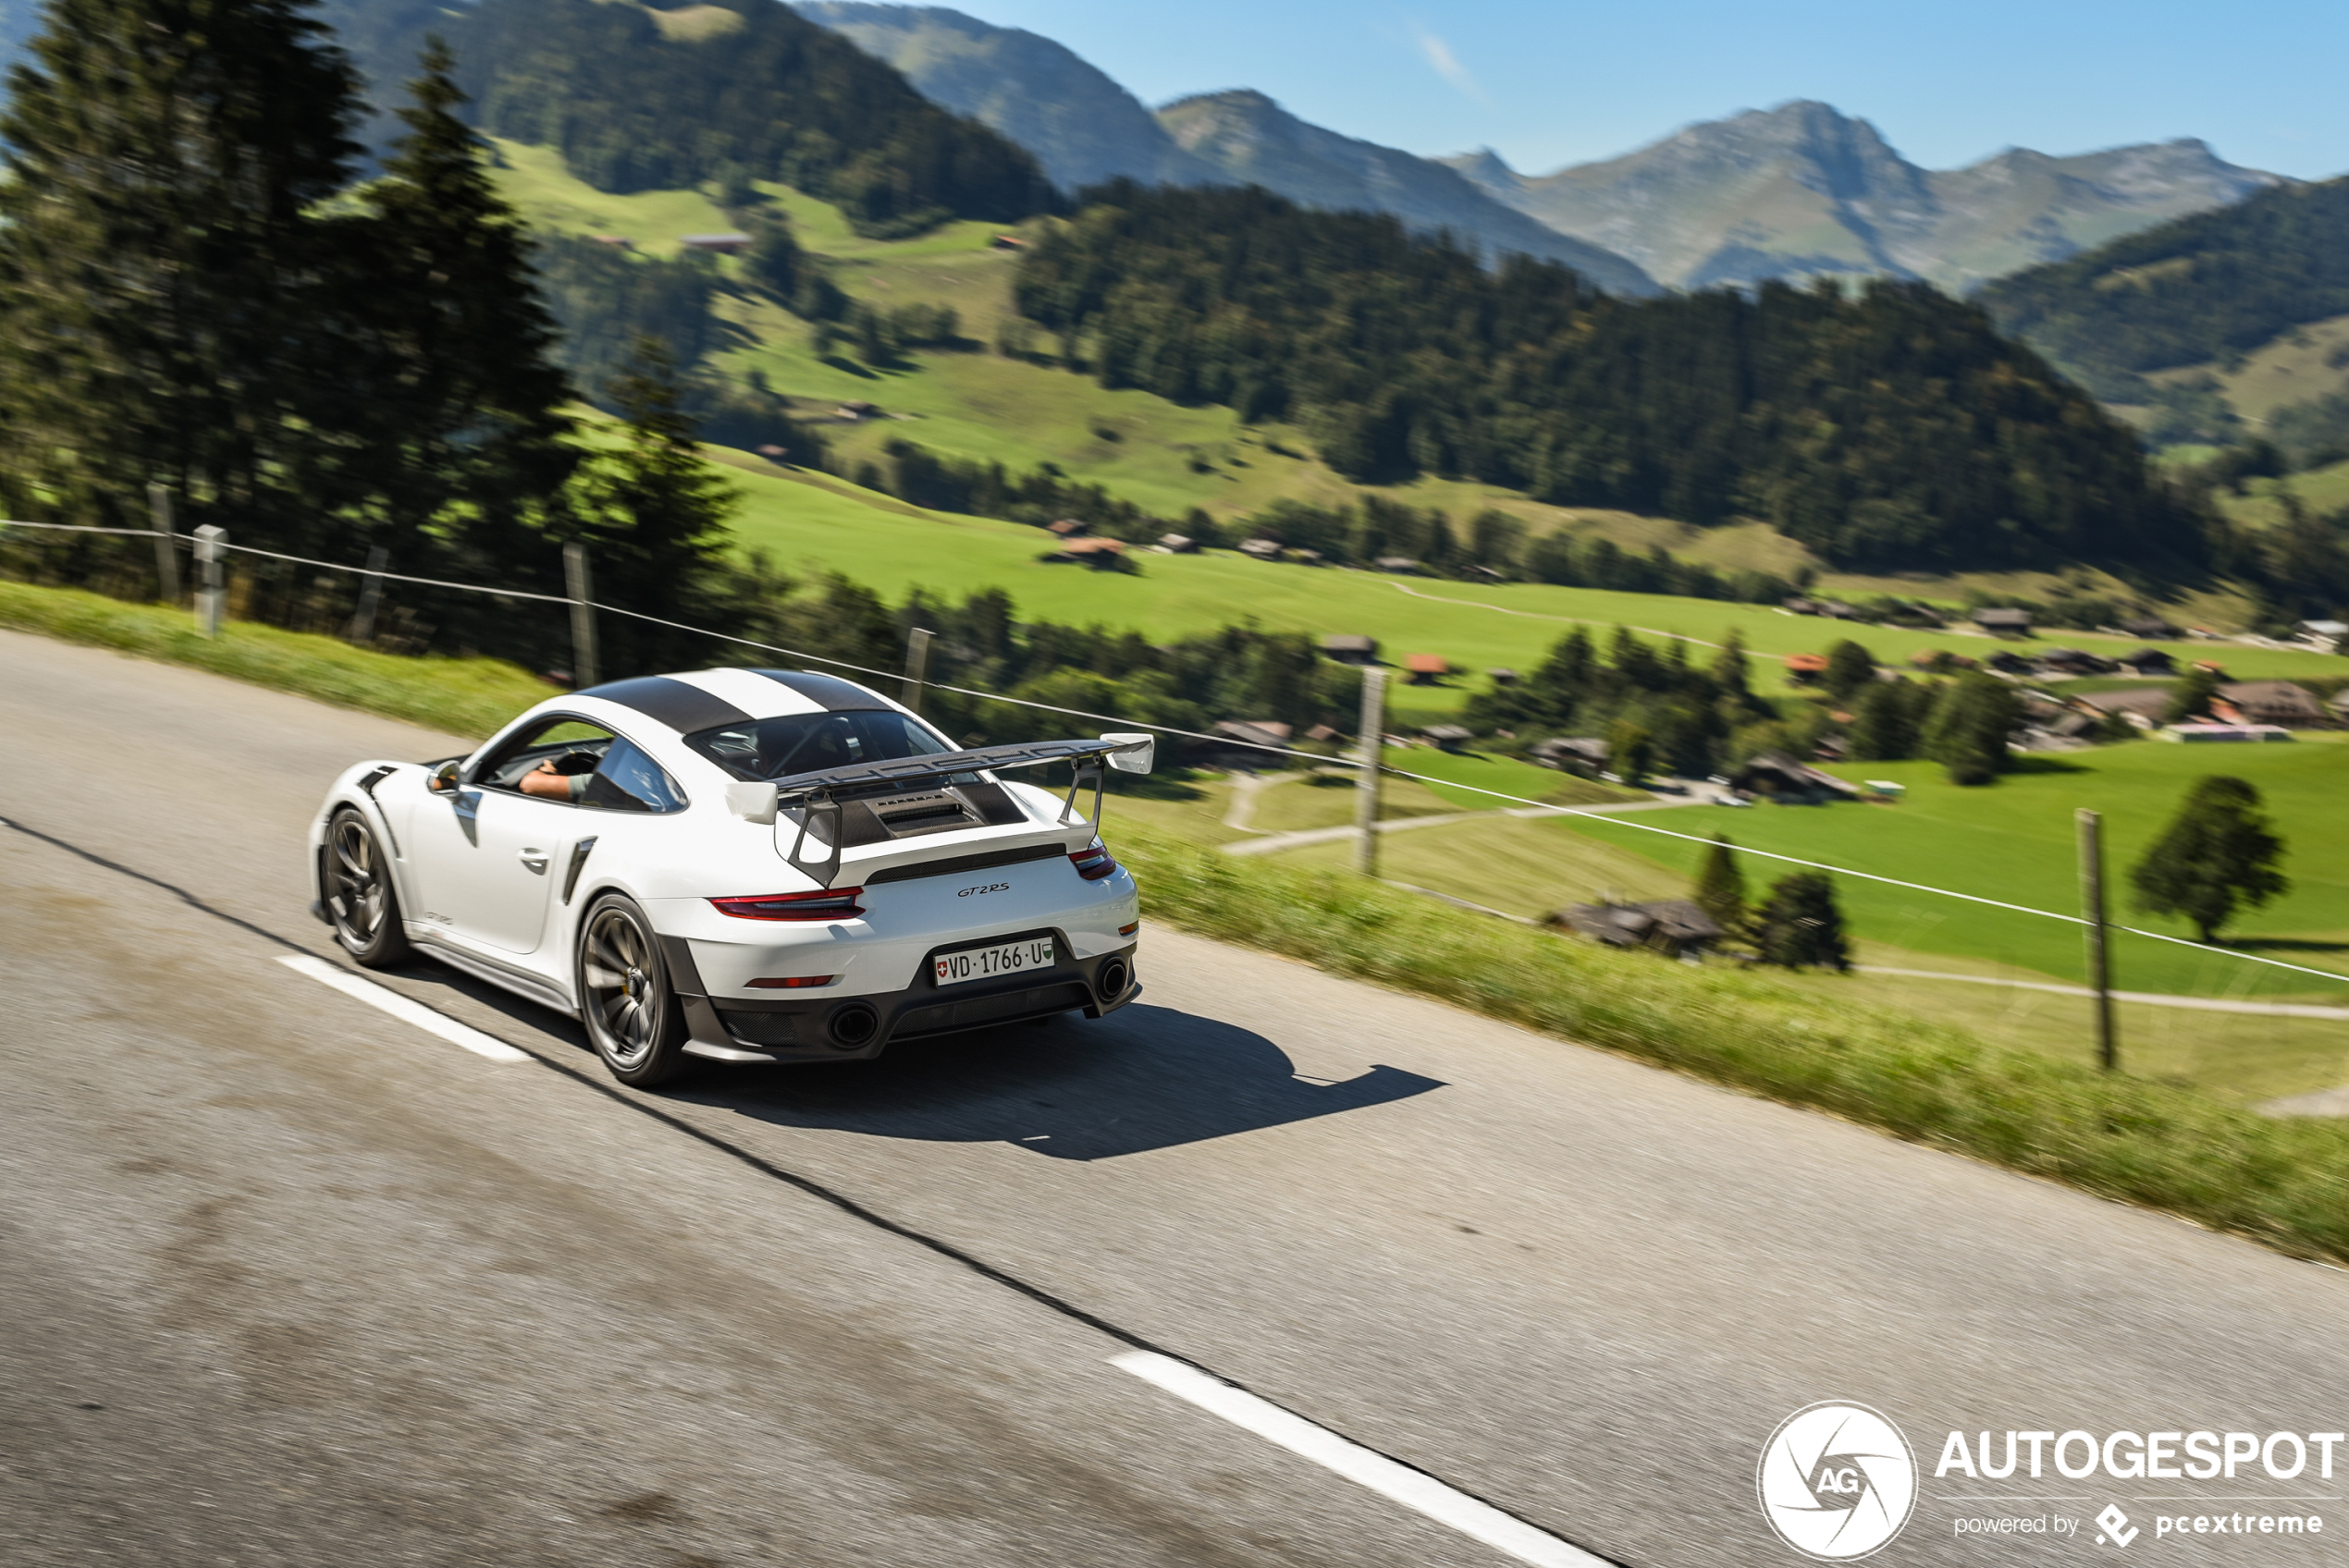 Perfect voor vrijdag: per Porsche GT2 RS de bergen in